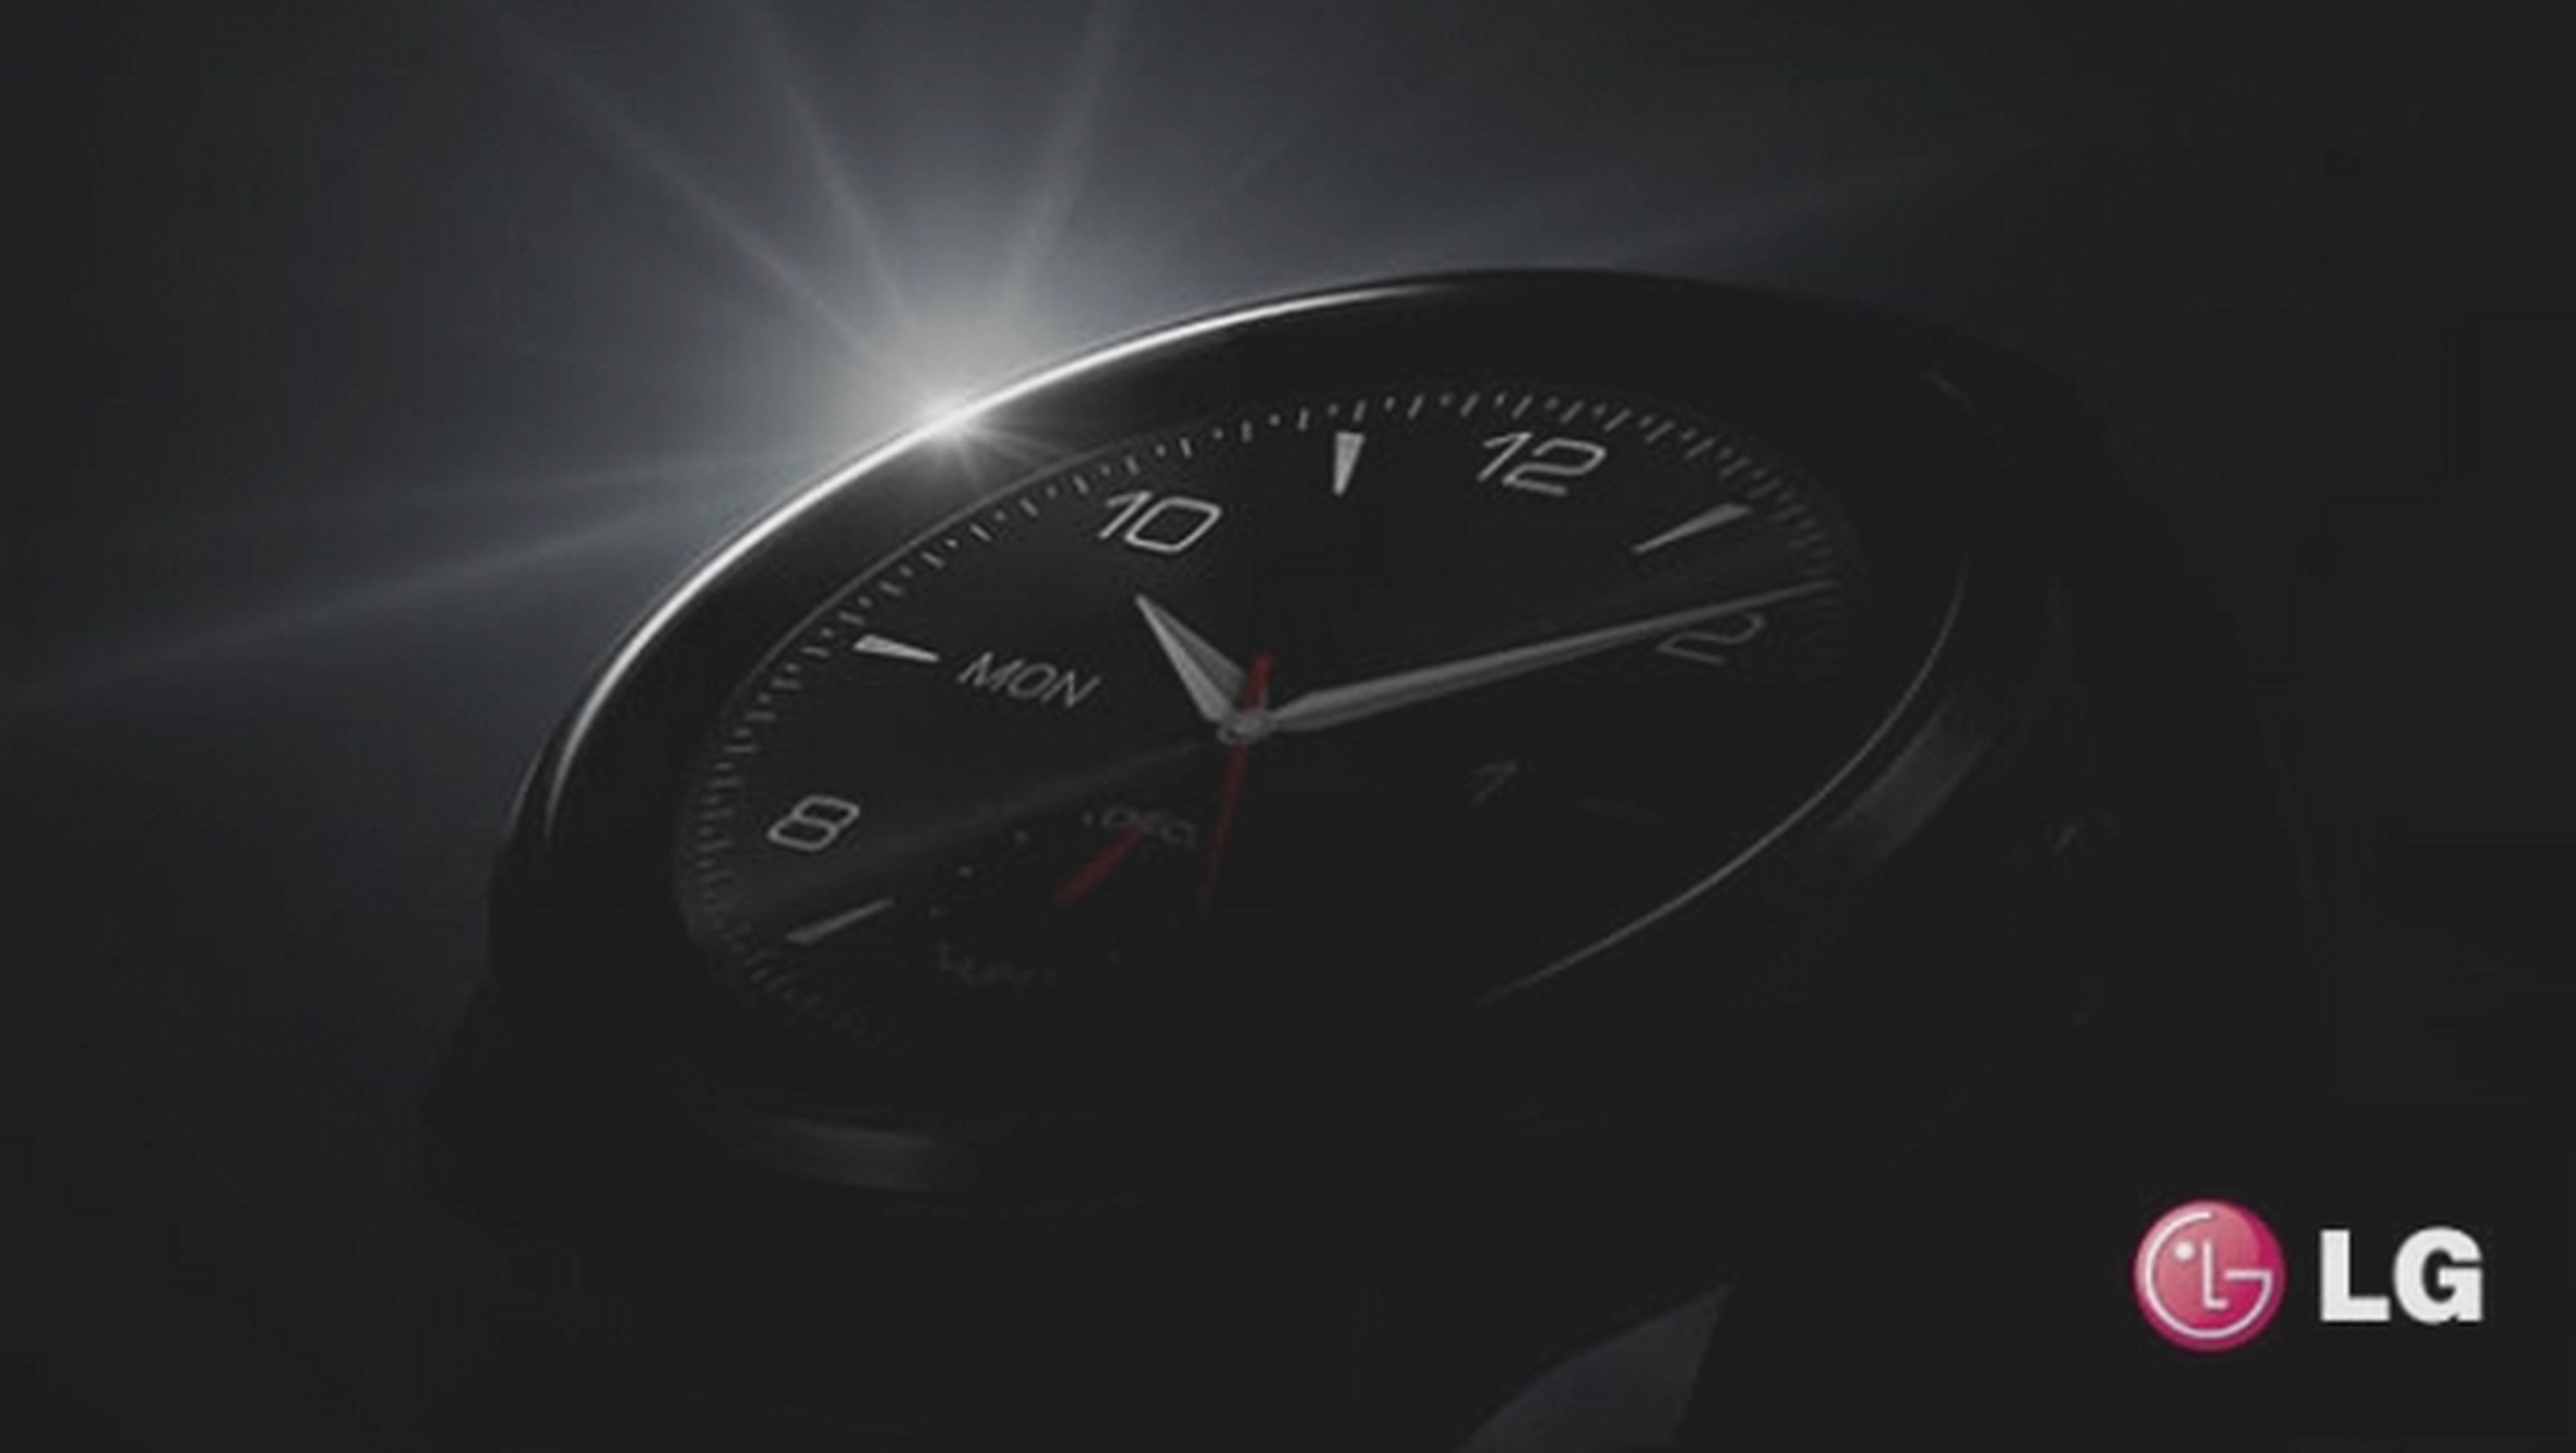 LG confirma la presentación del LG G Watch R, el smartwatch con pantalla redonda en IFA 2014.